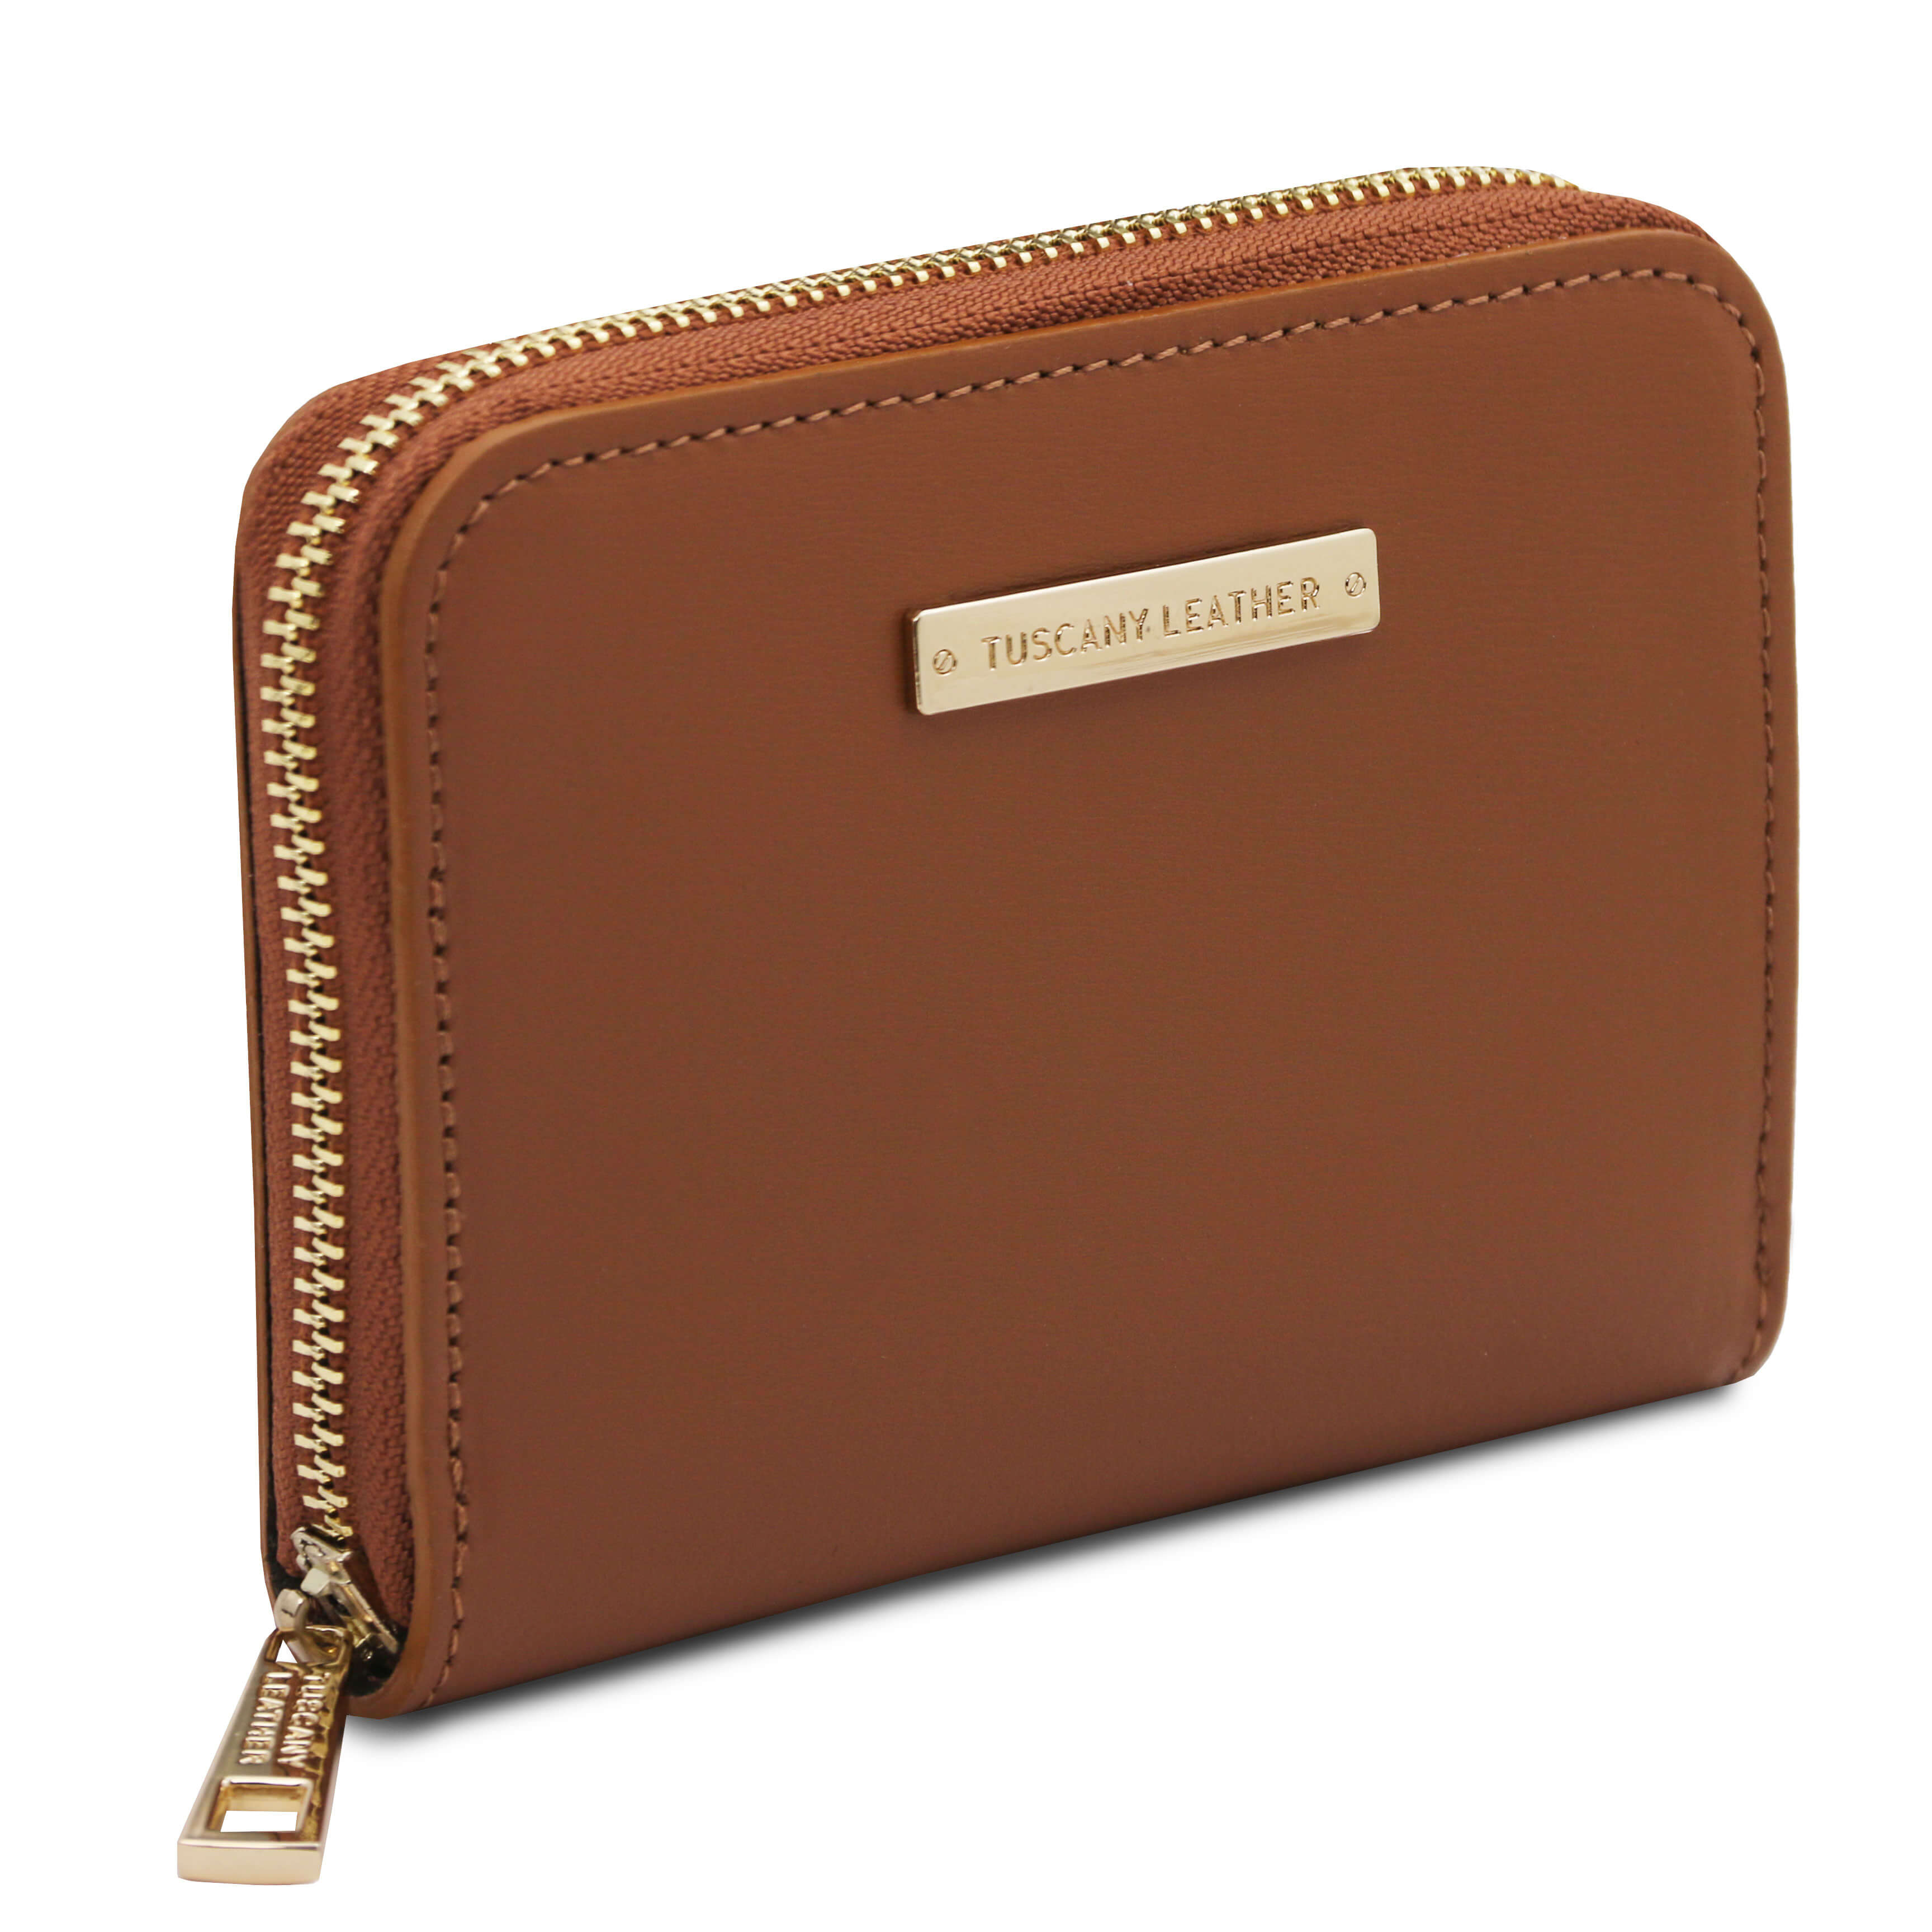 Tuscany Leather exclusieve leren portemonnee LEDA voor dames tl142320 cognac zijkant